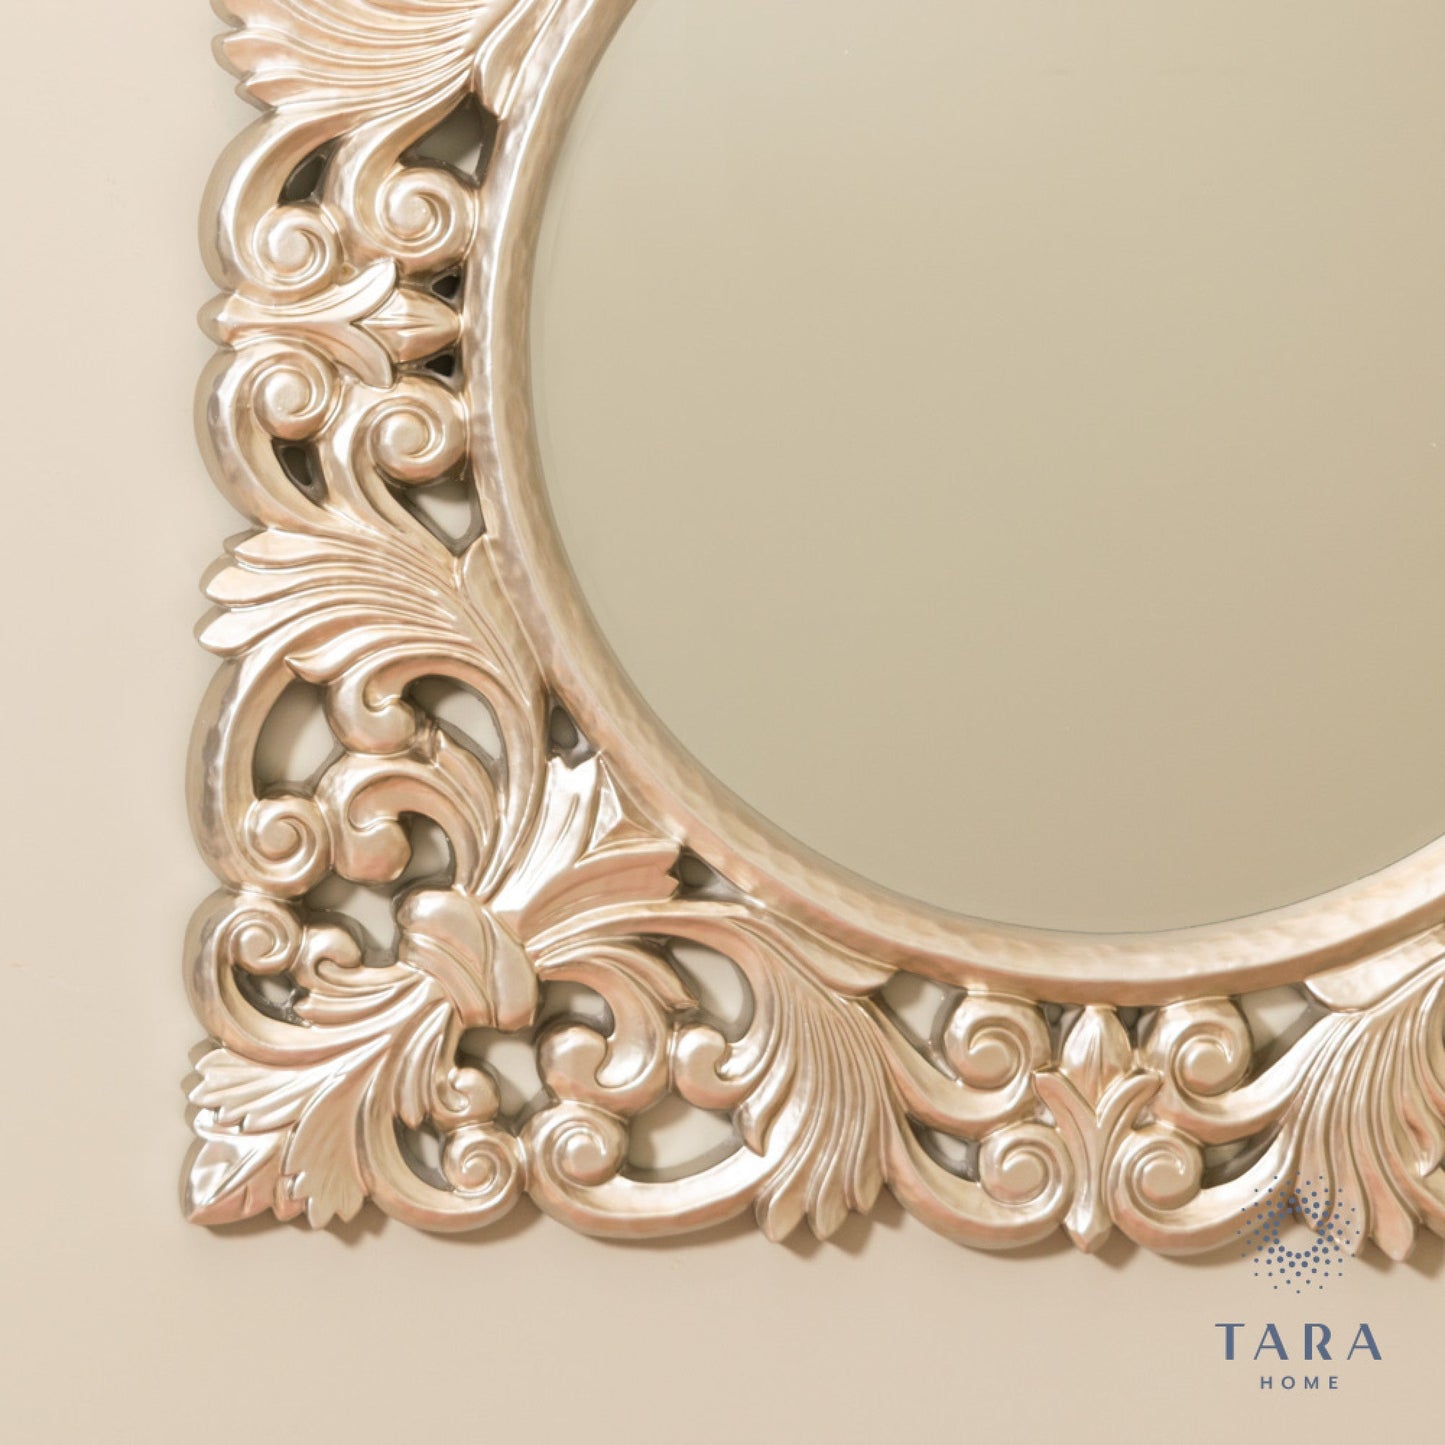 Varia  Baroque square mirror  90 x 90 cm  champagne silver